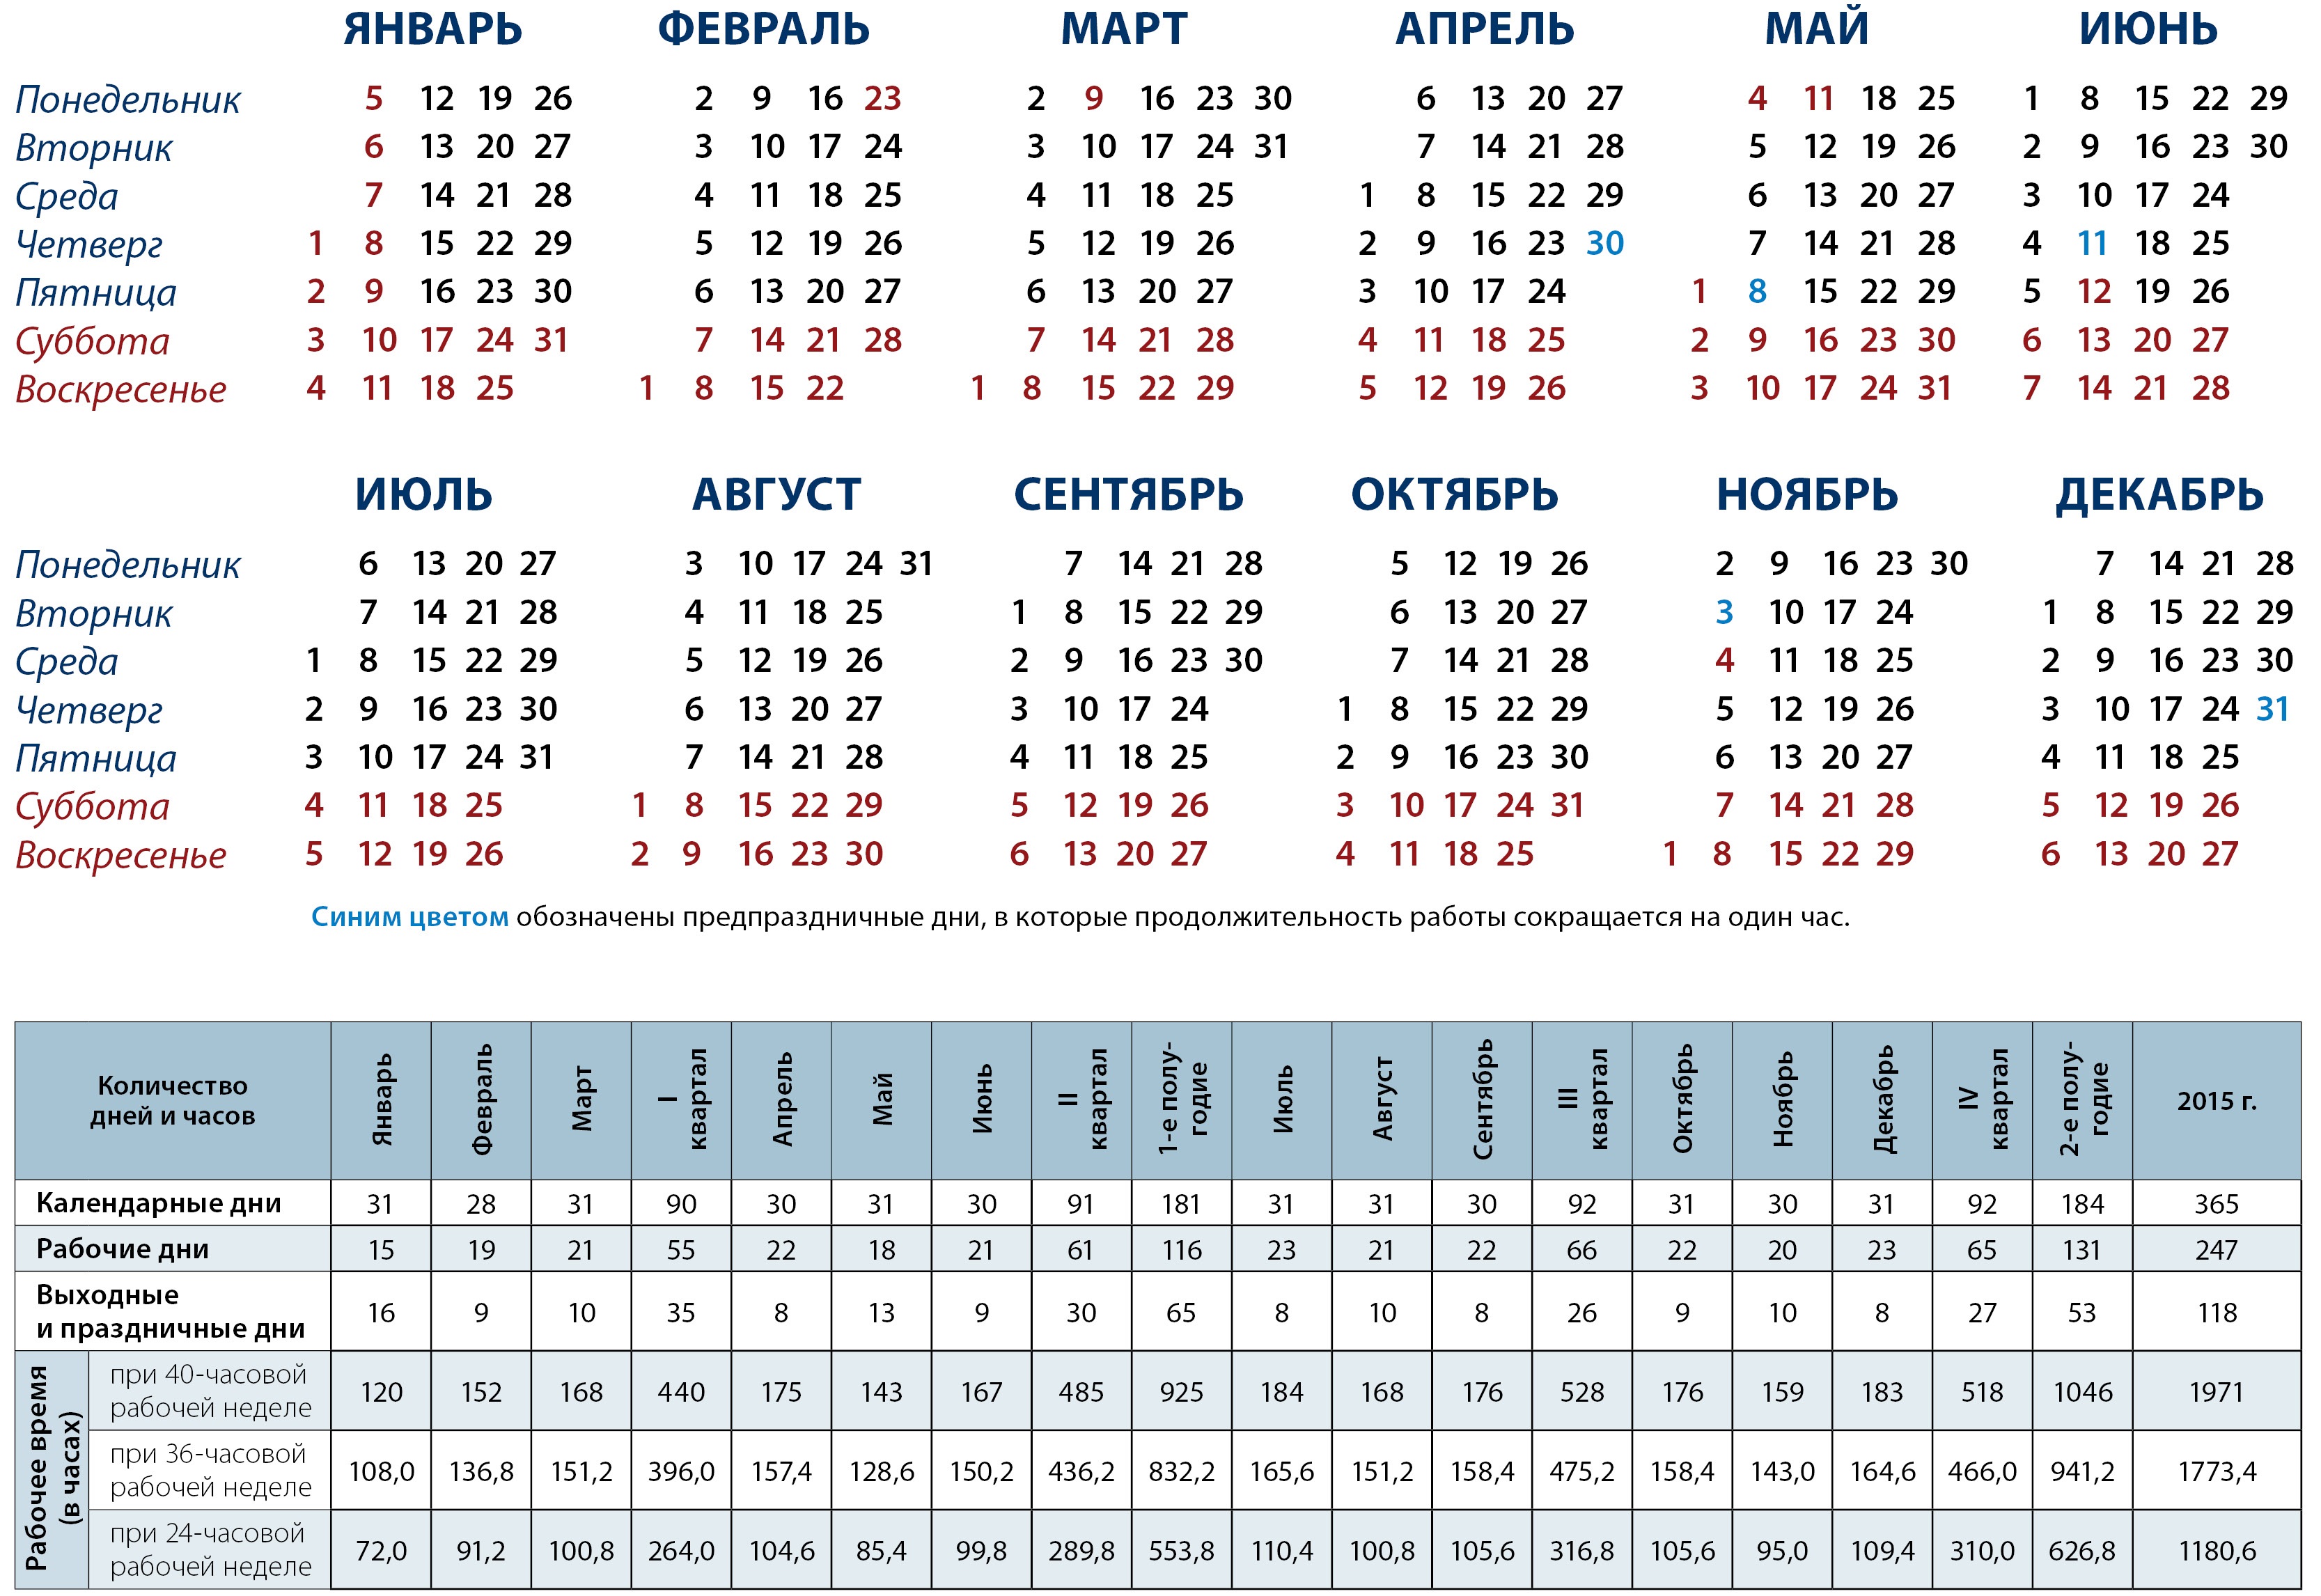 Производственный календарь на апрель месяц